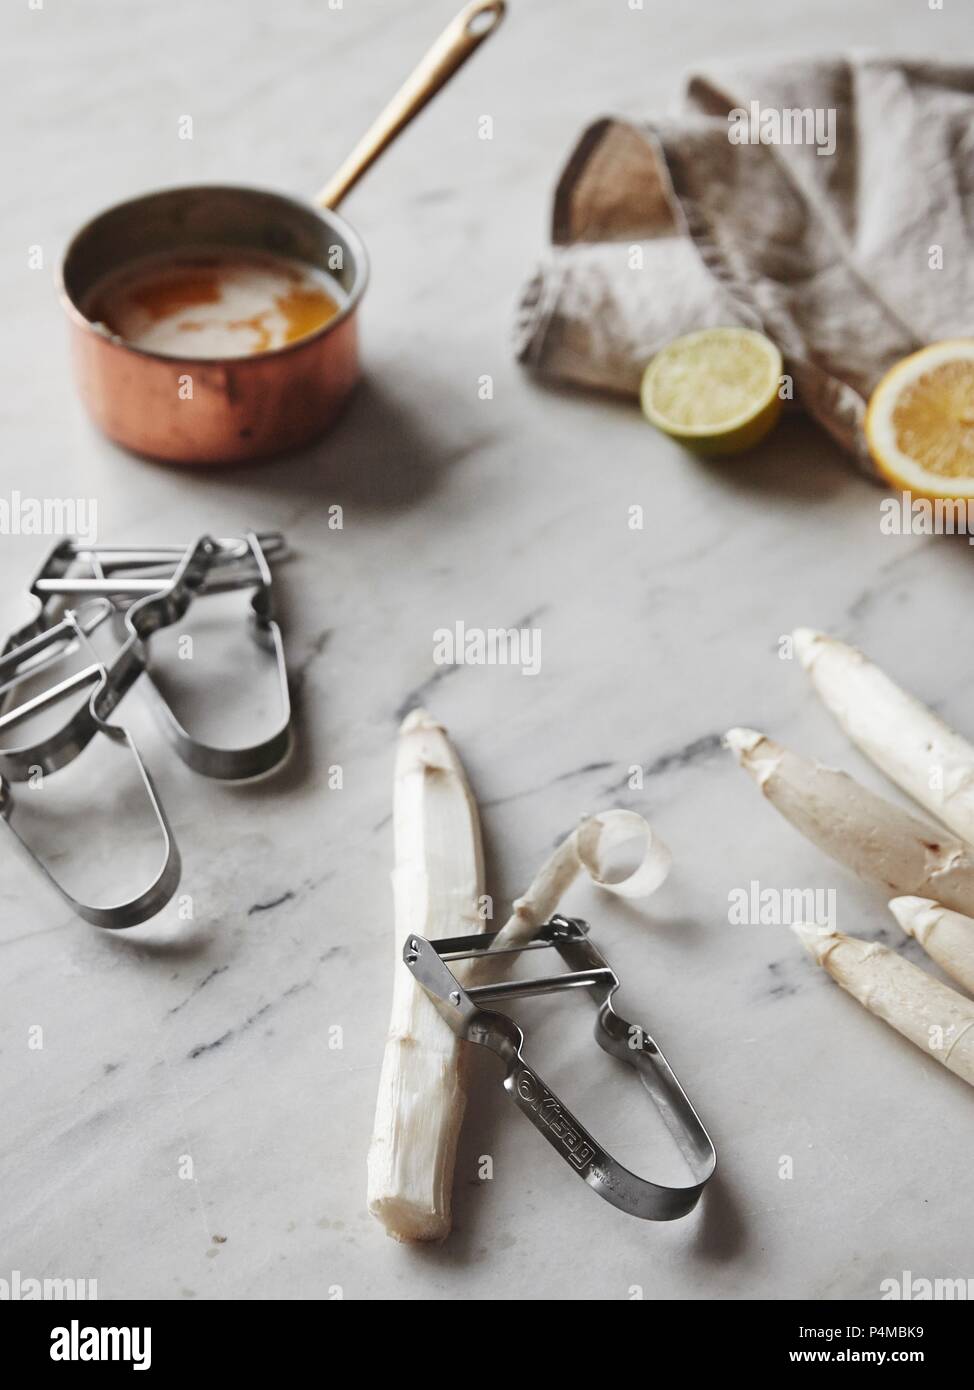 Les asperges blanches avec un couteau économe et une casserole de beurre brun Banque D'Images